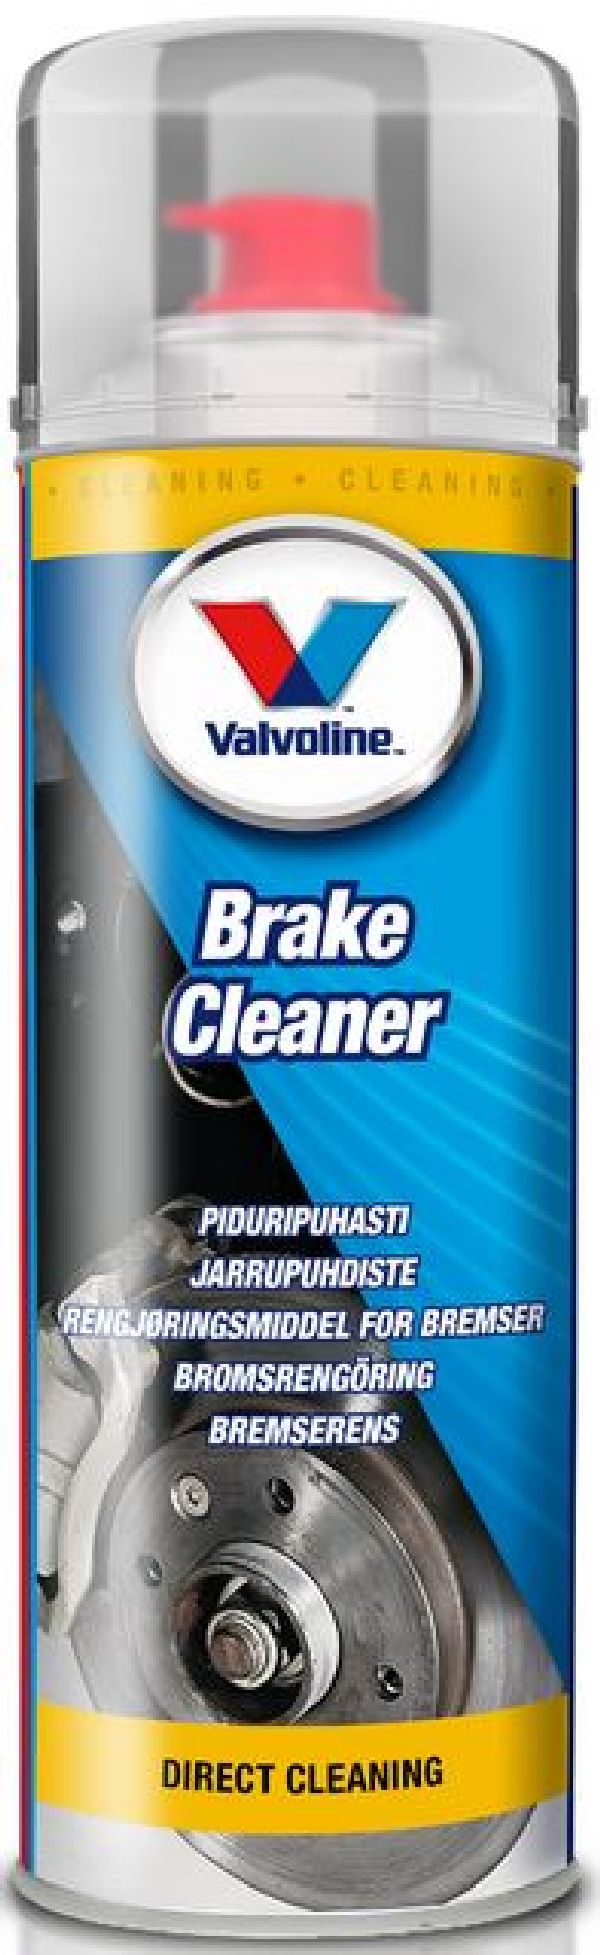 Valvoline Brake cleaner